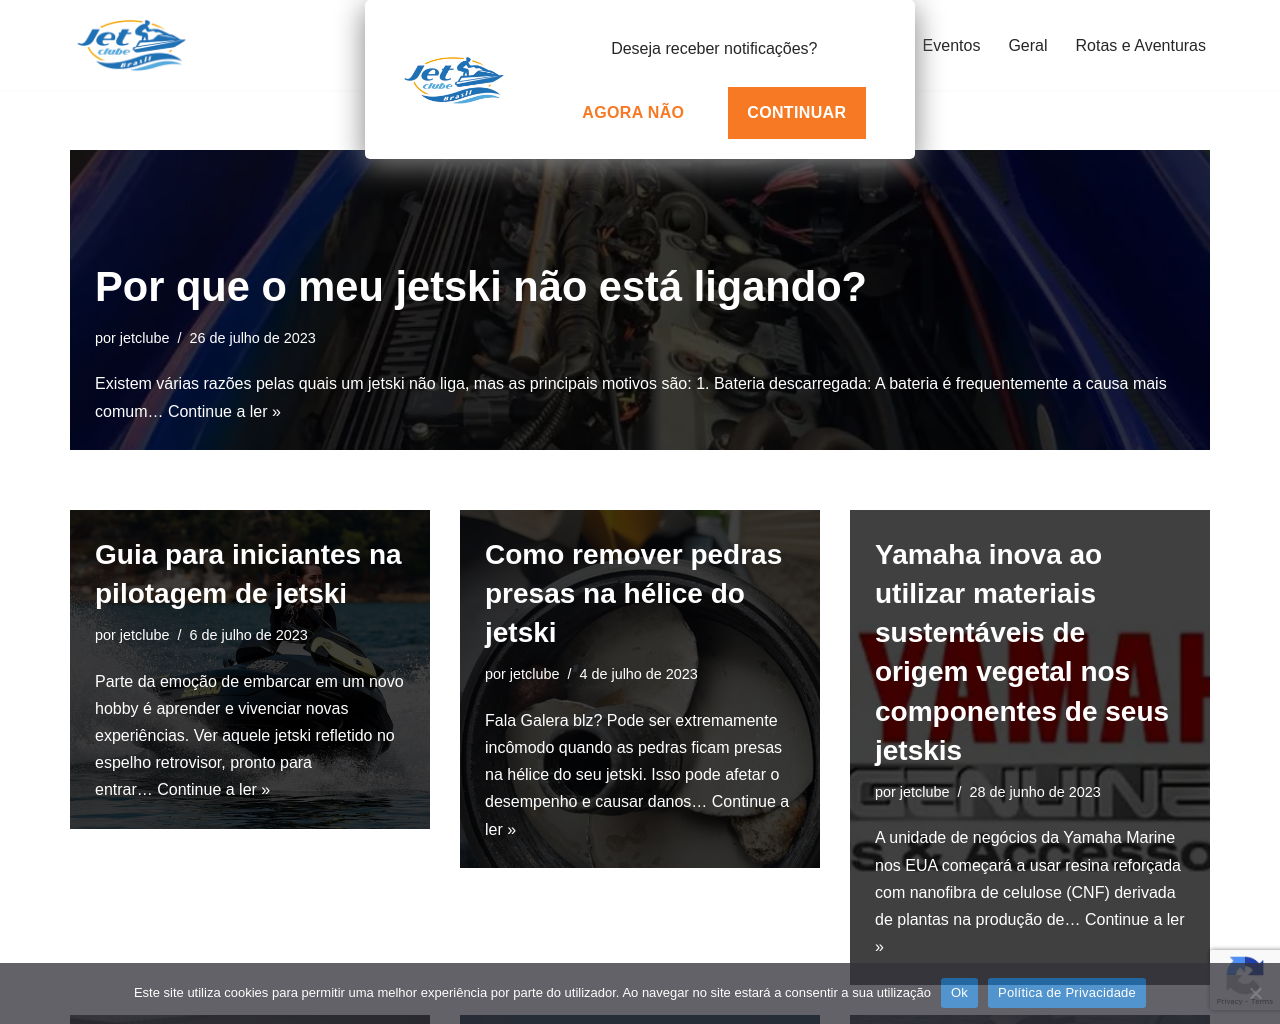 jetclube.com.br